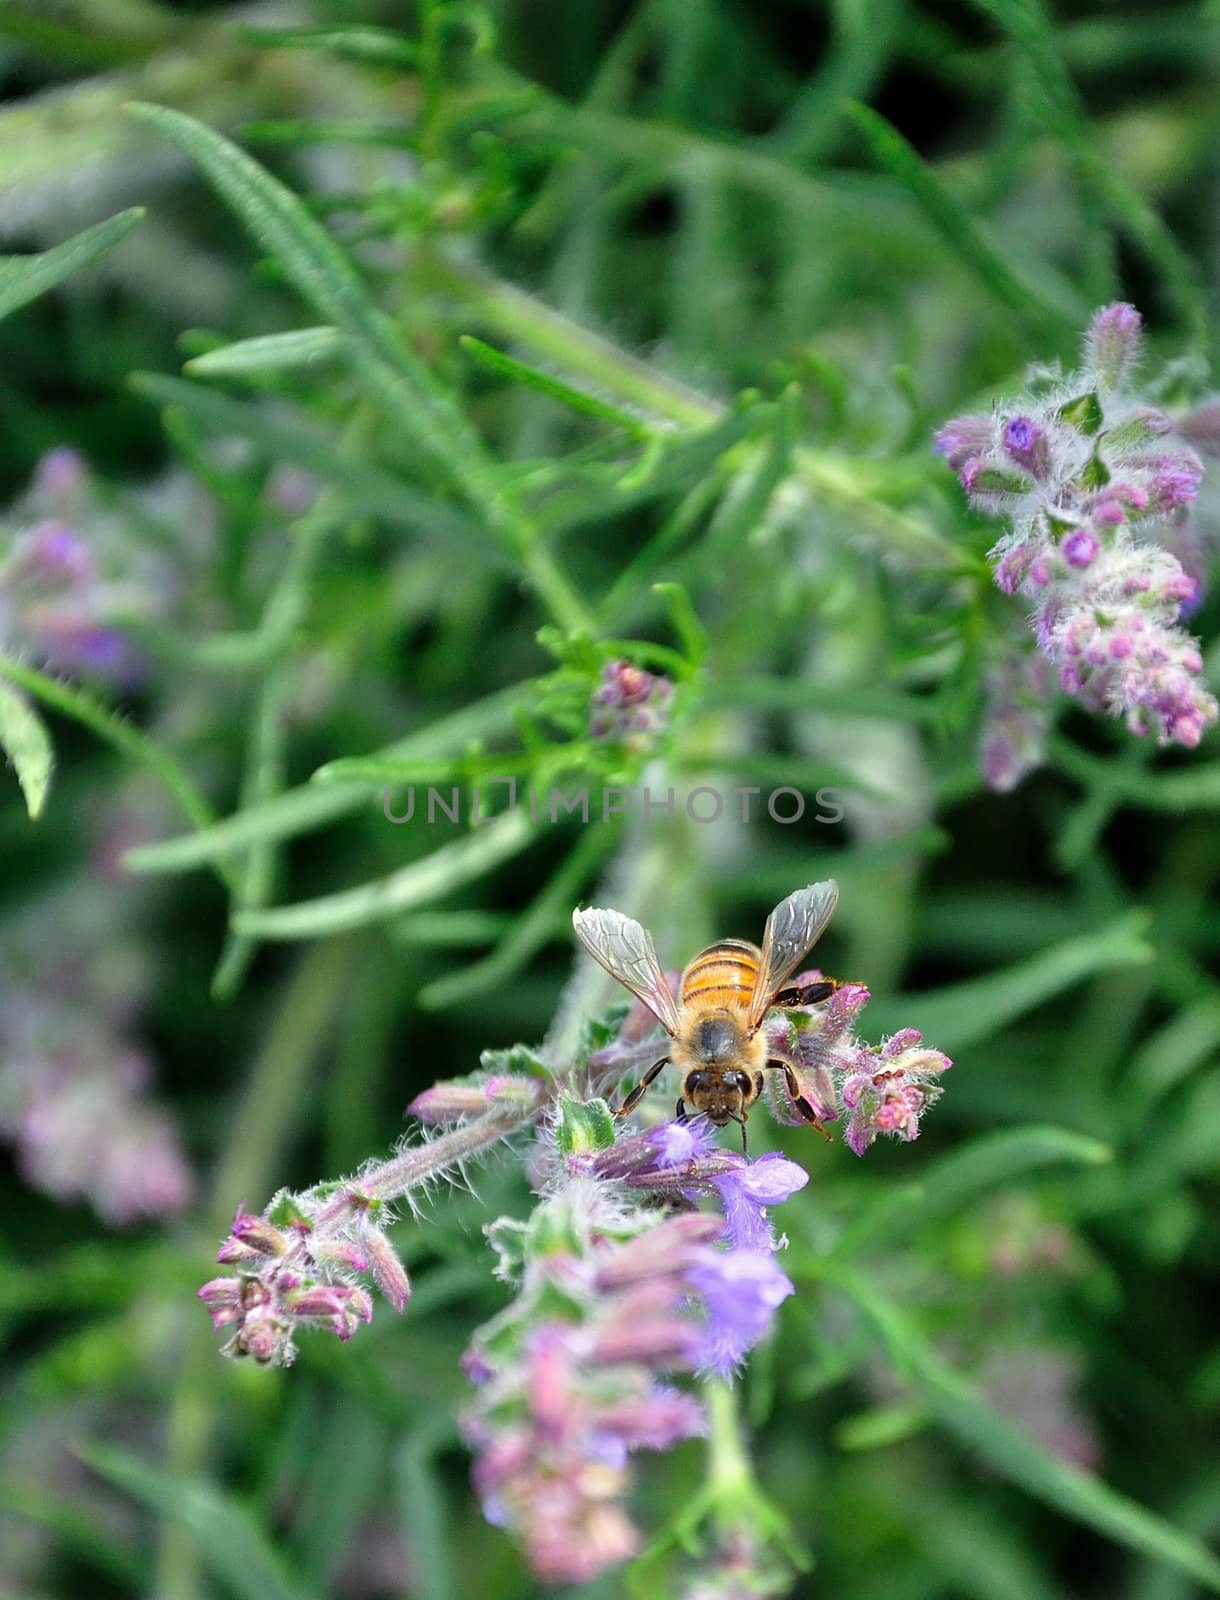 A bee flies around a purple wildflower.